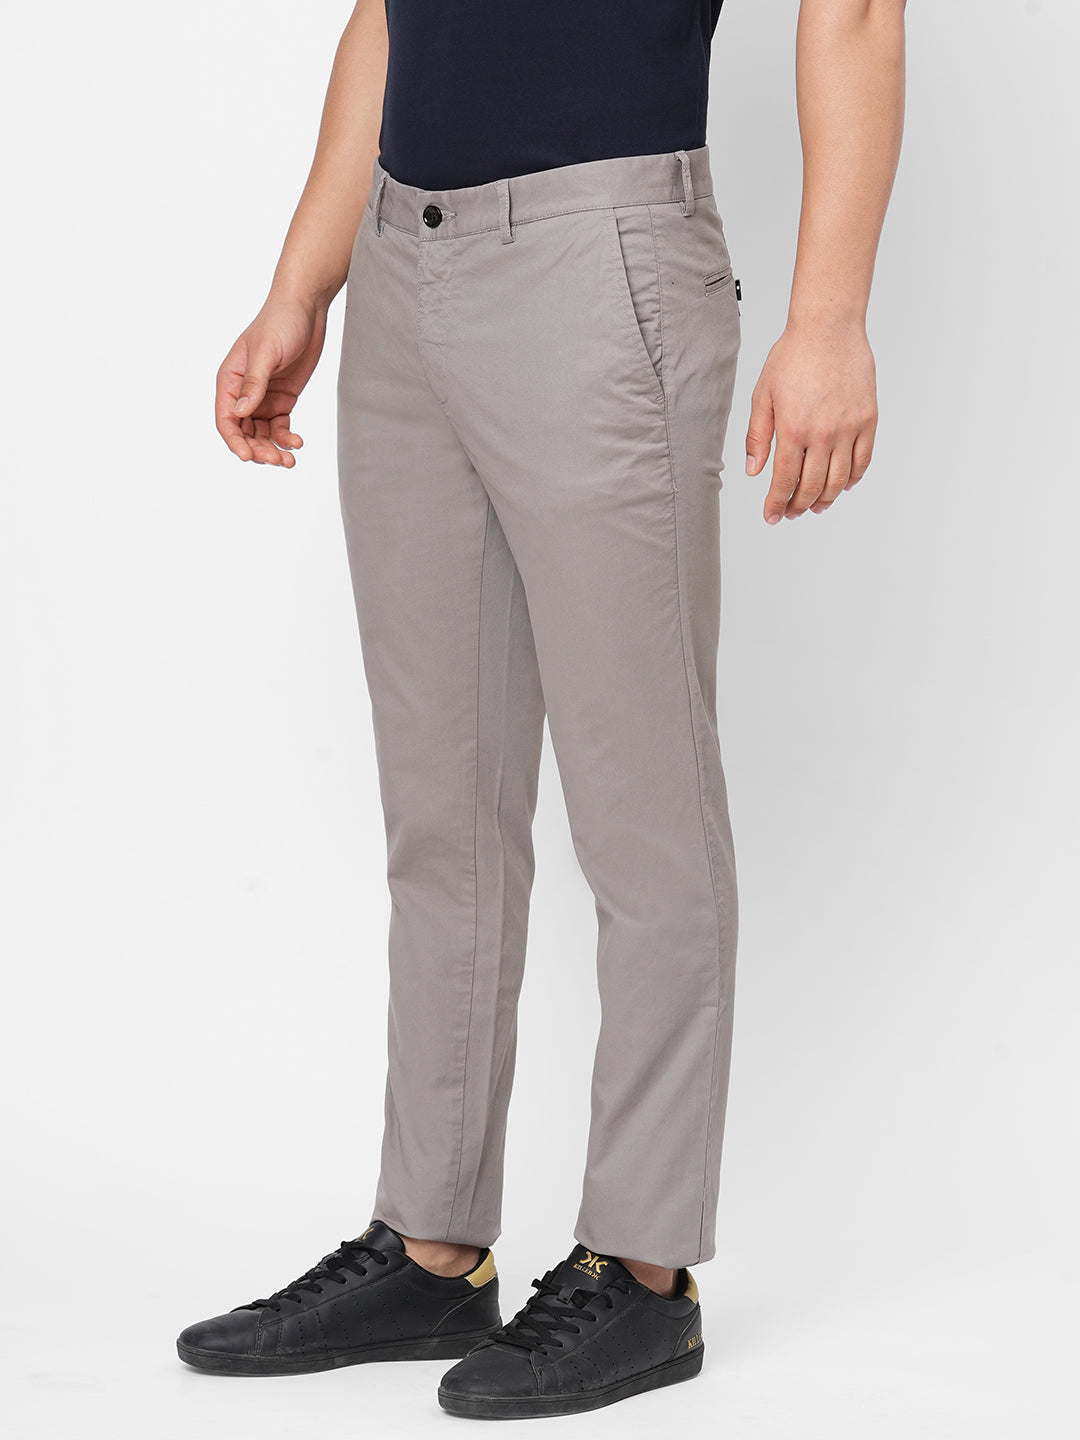 Men's Grey Cotton Lycra Slim Fit Pant